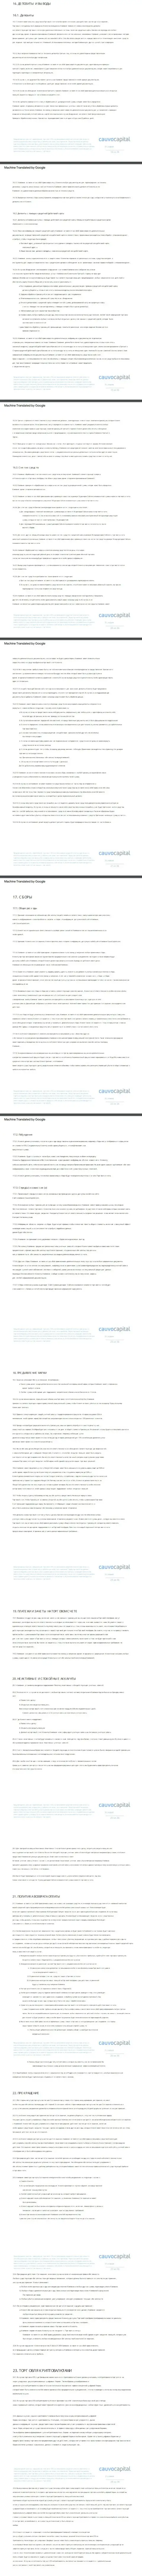 Часть третья клиентского соглашения FOREX-брокерской компании Cauvo Capital